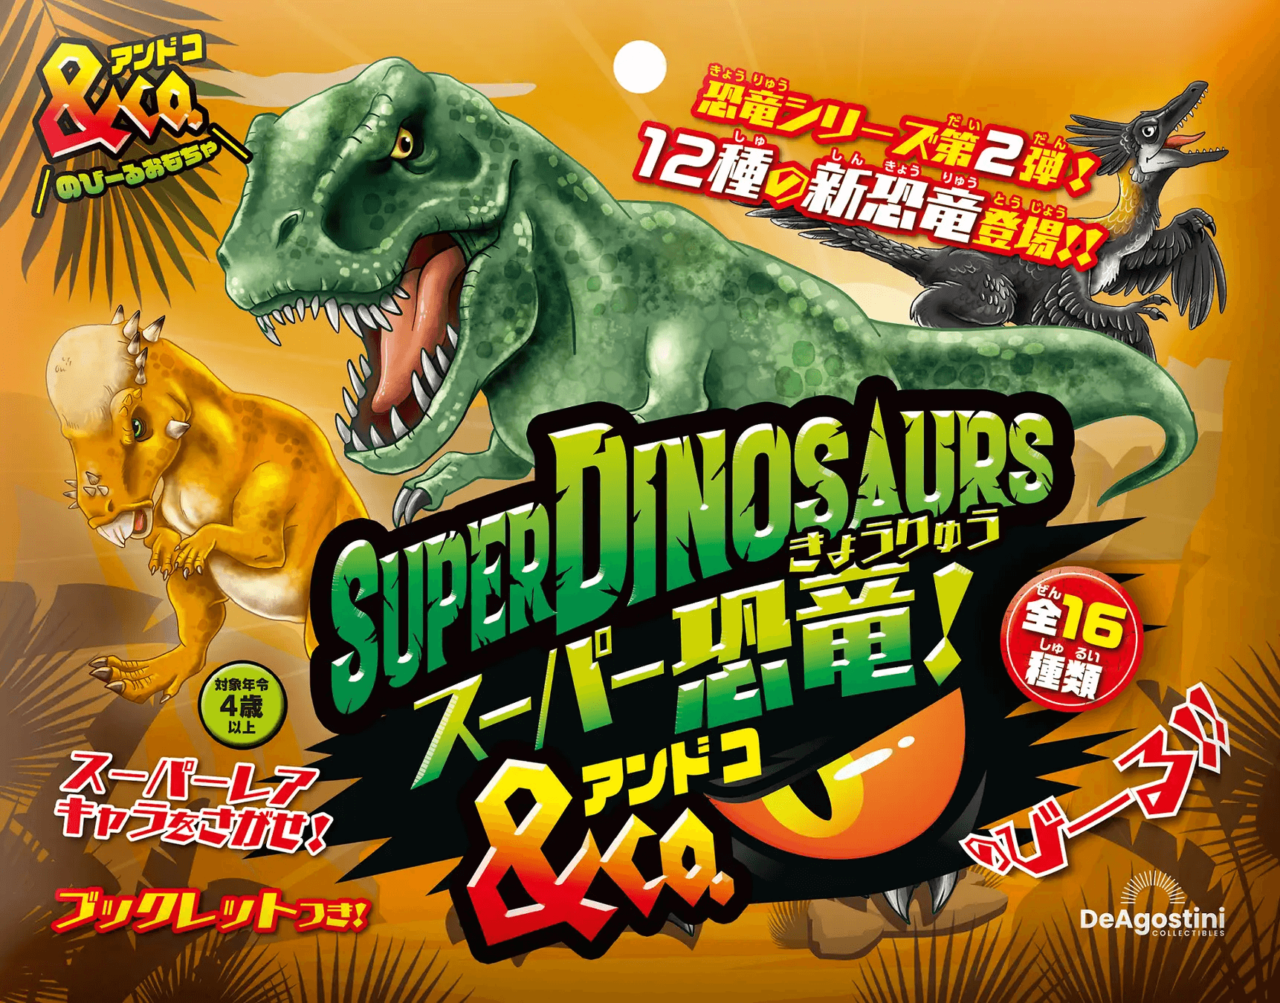 のびる恐竜おもちゃ「スーパー恐竜&Co.(アンドコ)」メイン画像